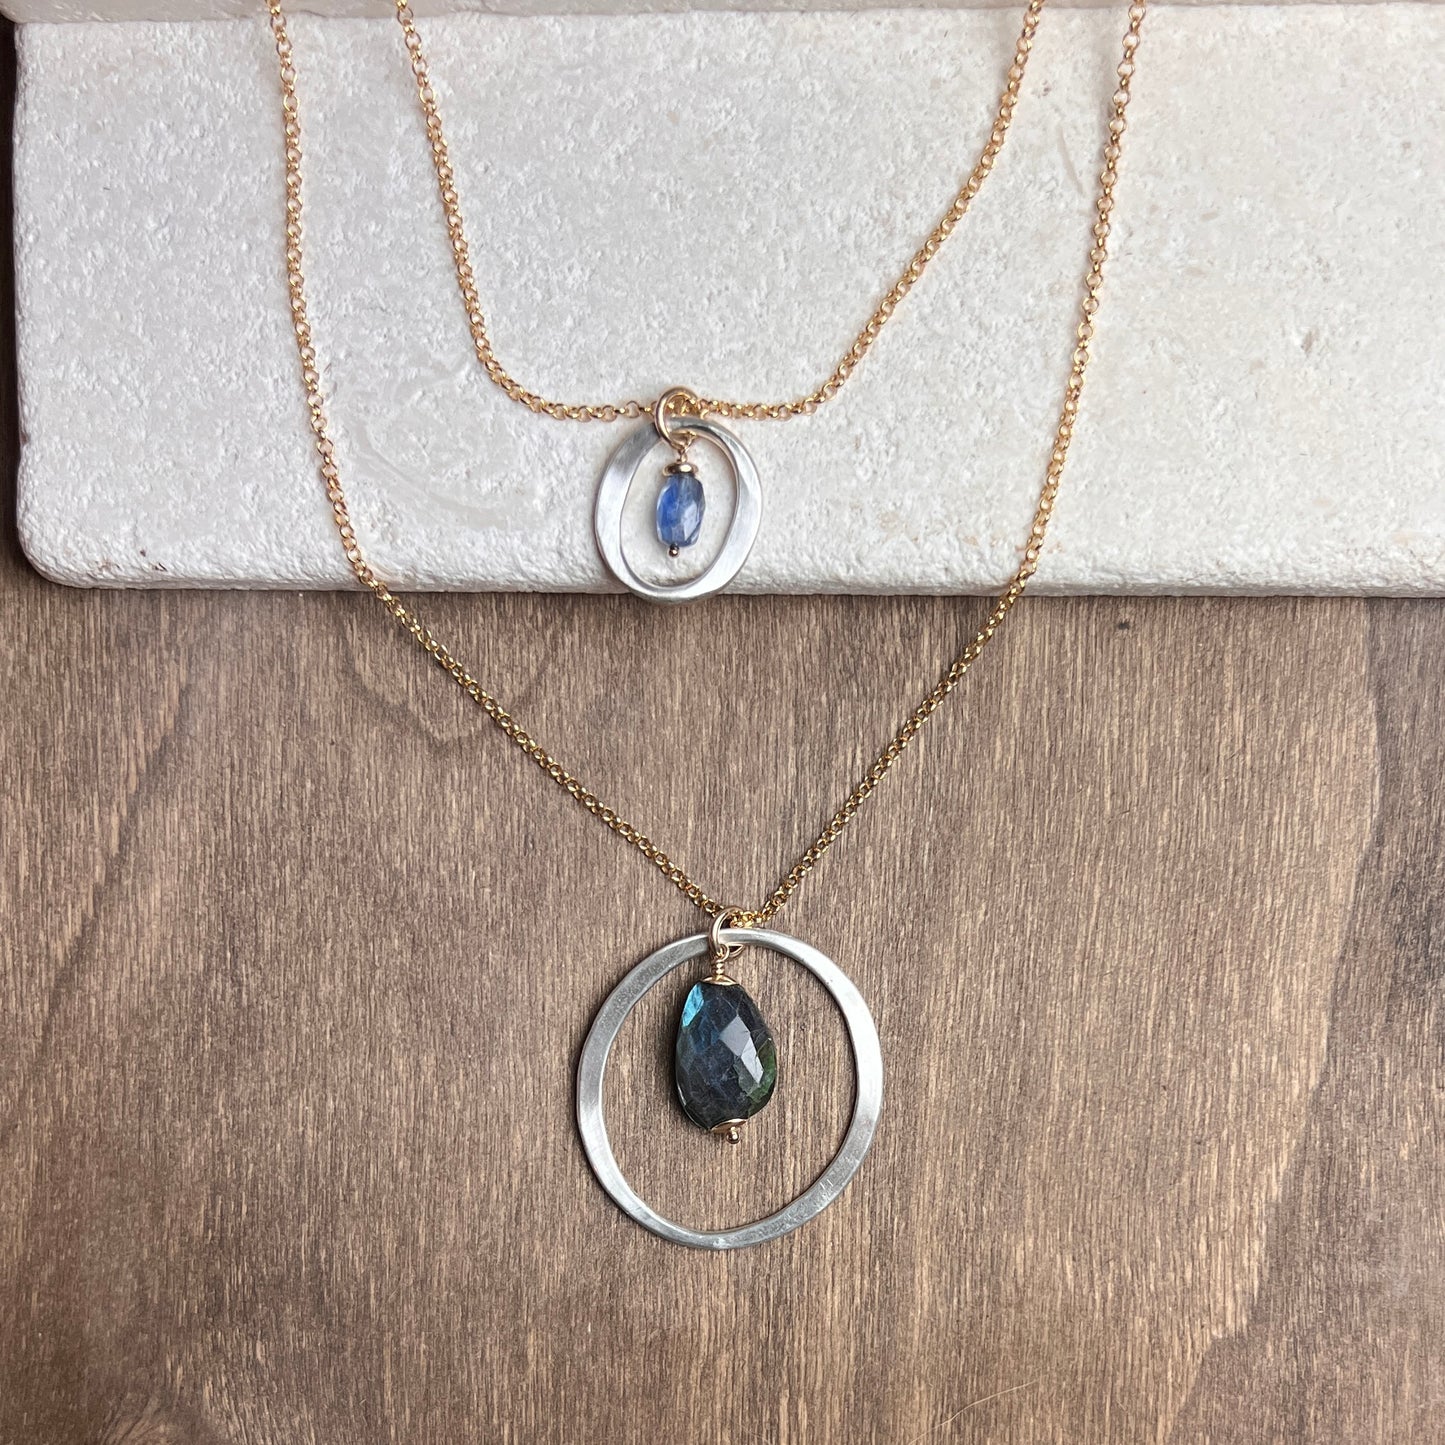 Kai Large Necklace with Labradorite Drop – Mixed Metal